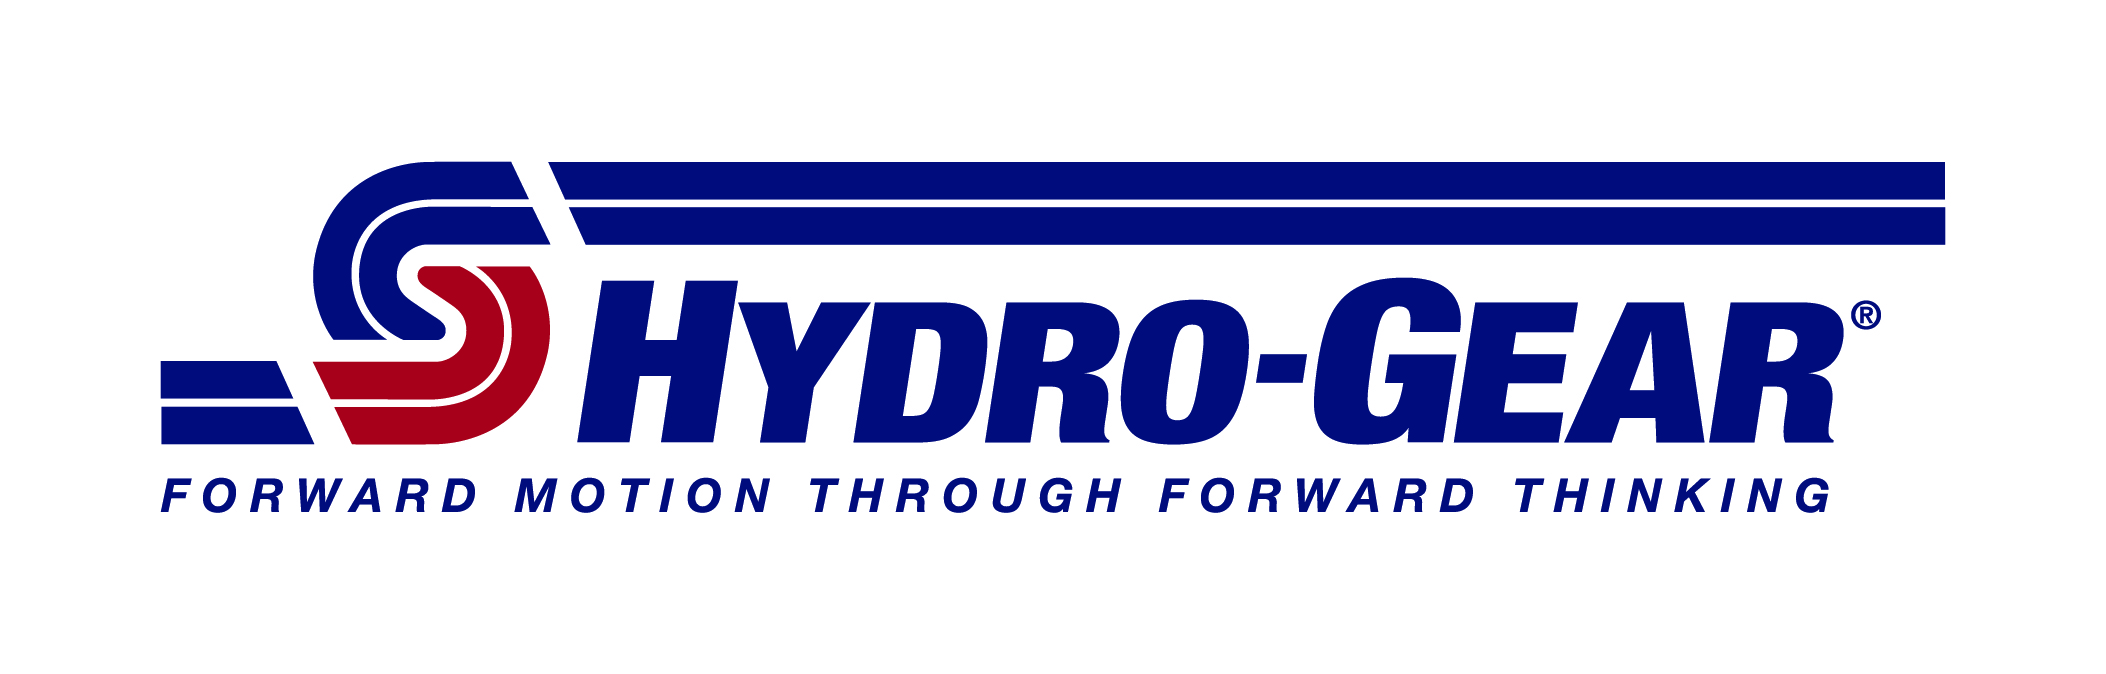 Hydro-Gear. Forward Motion through Forward Thinking.